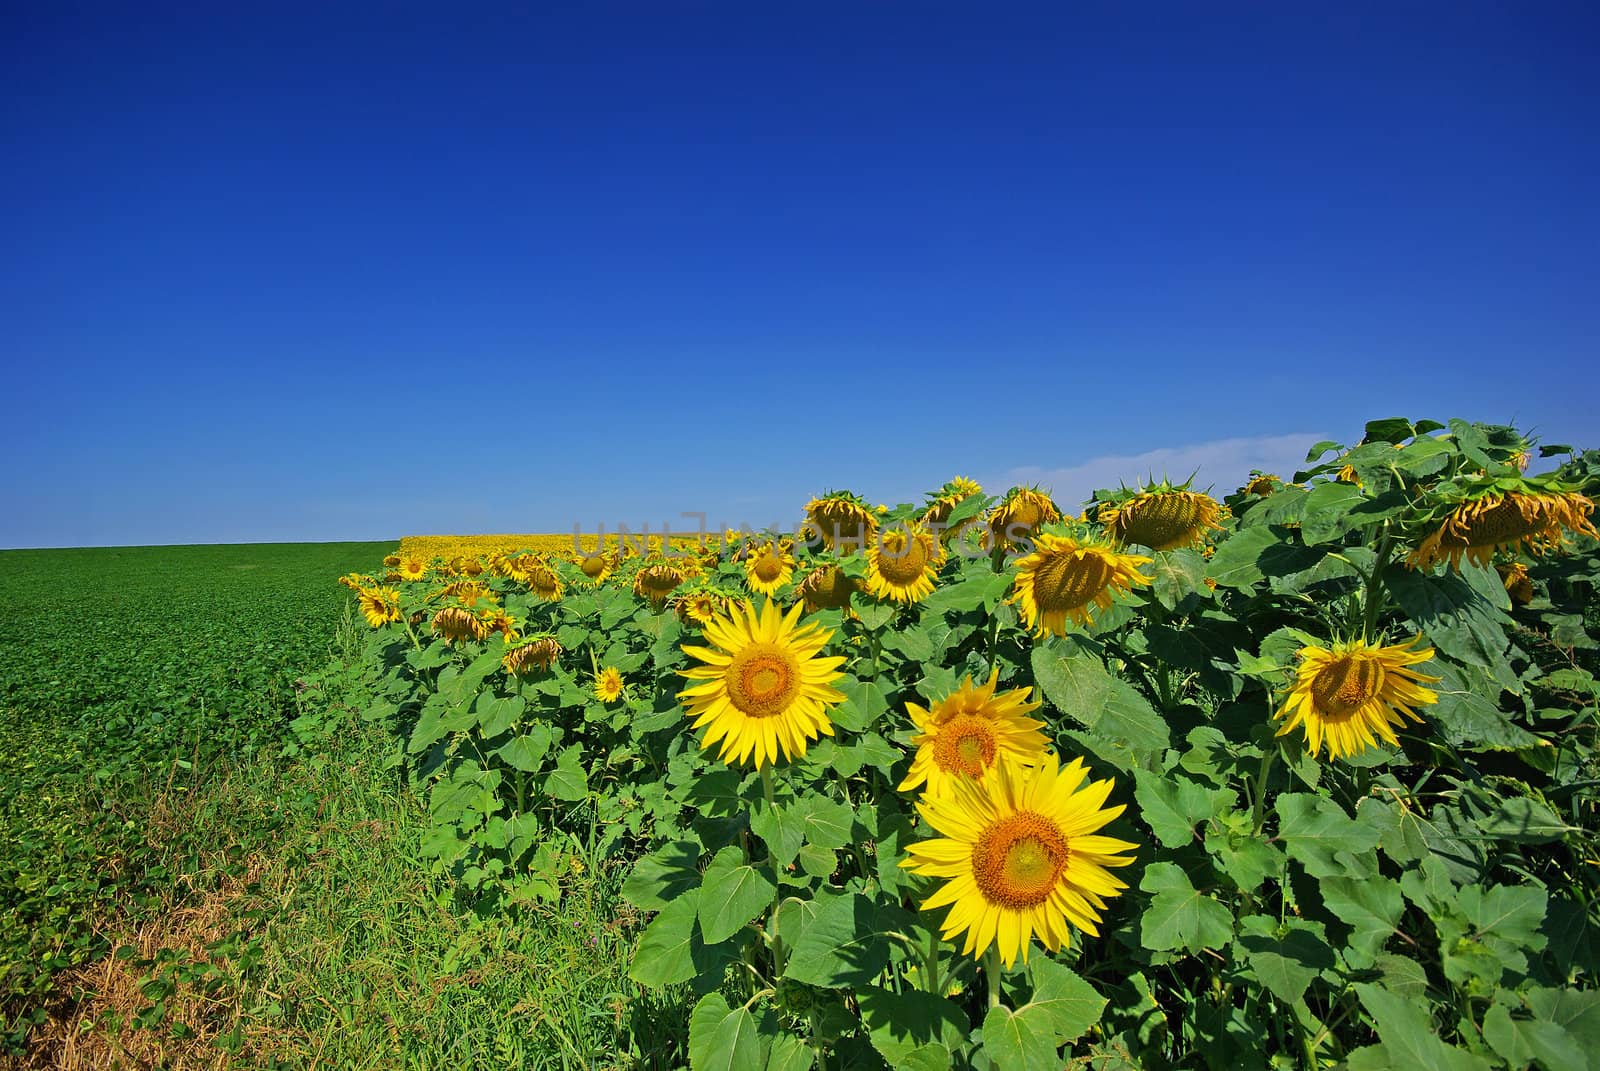 Soya bean field and sunflower field